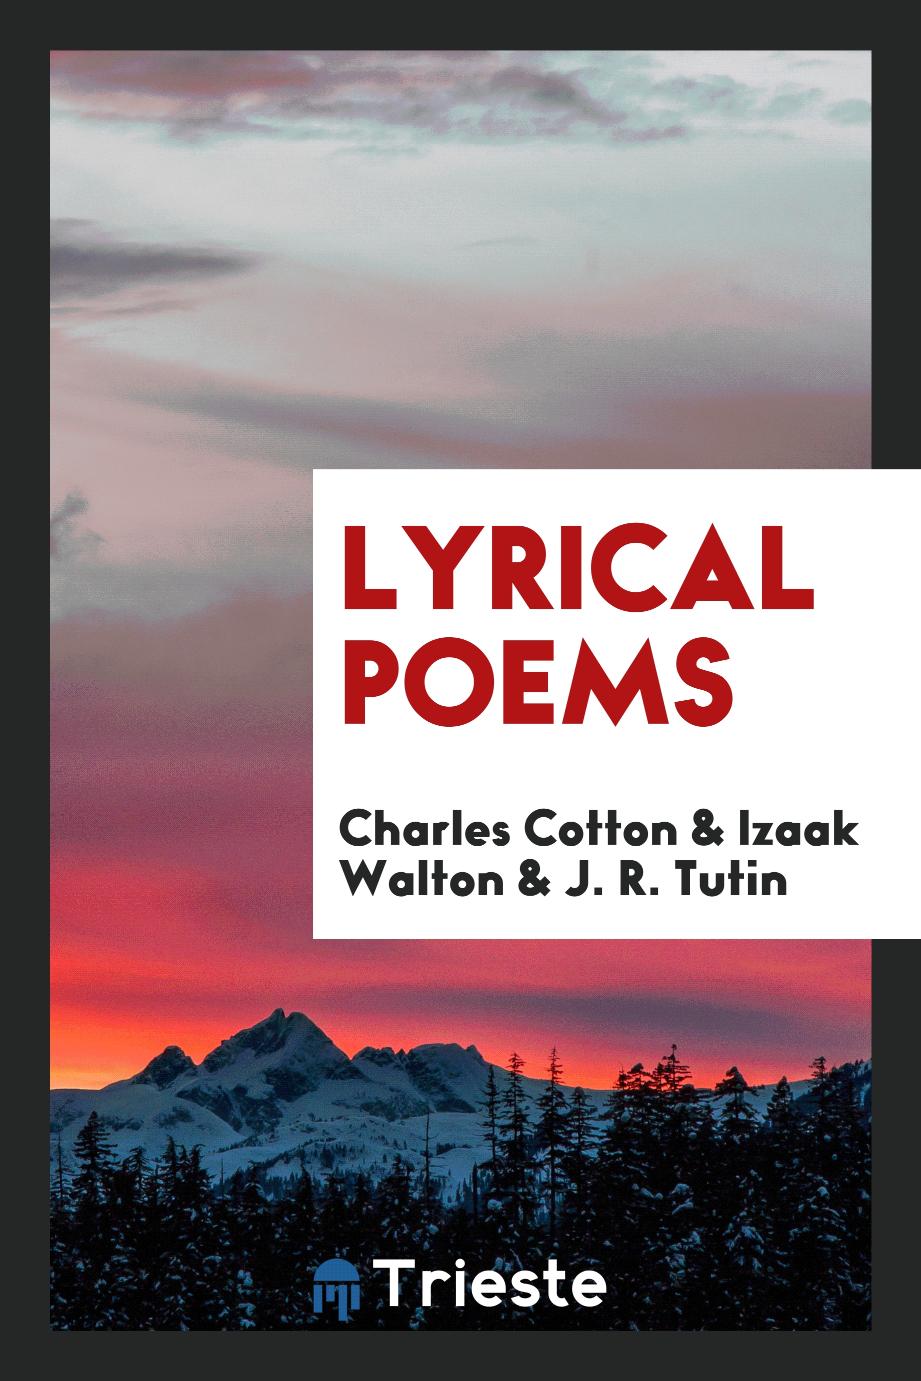 Lyrical poems